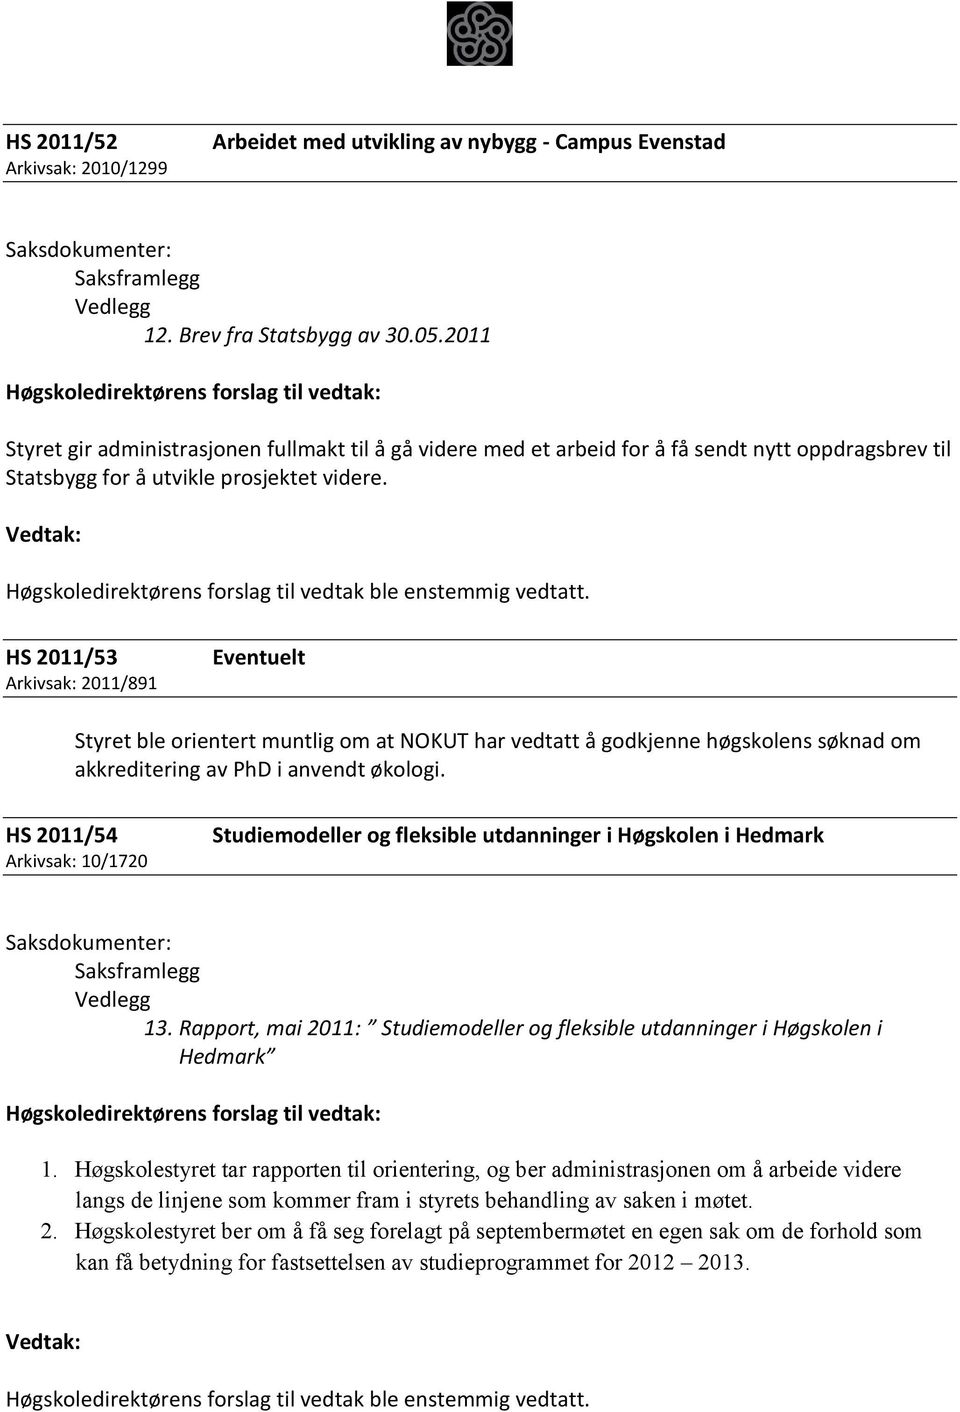 HS 2011/53 Arkivsak: 2011/891 Eventuelt Styret ble orientert muntlig om at NOKUT har vedtatt å godkjenne høgskolens søknad om akkreditering av PhD i anvendt økologi.